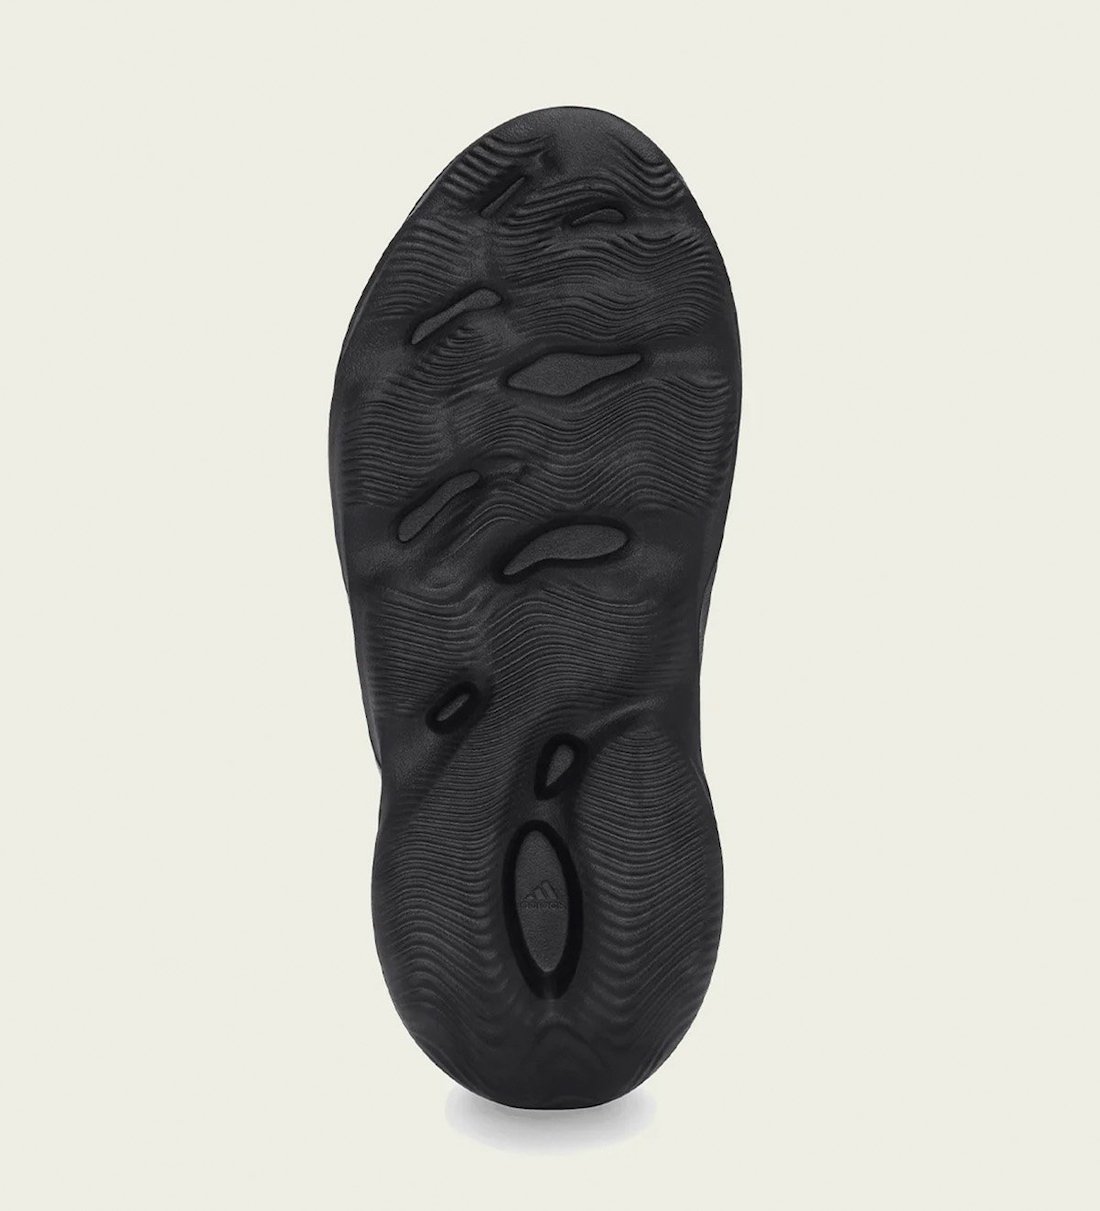 adidas Yeezy Foam Runner Onyx HP8739 Release Date